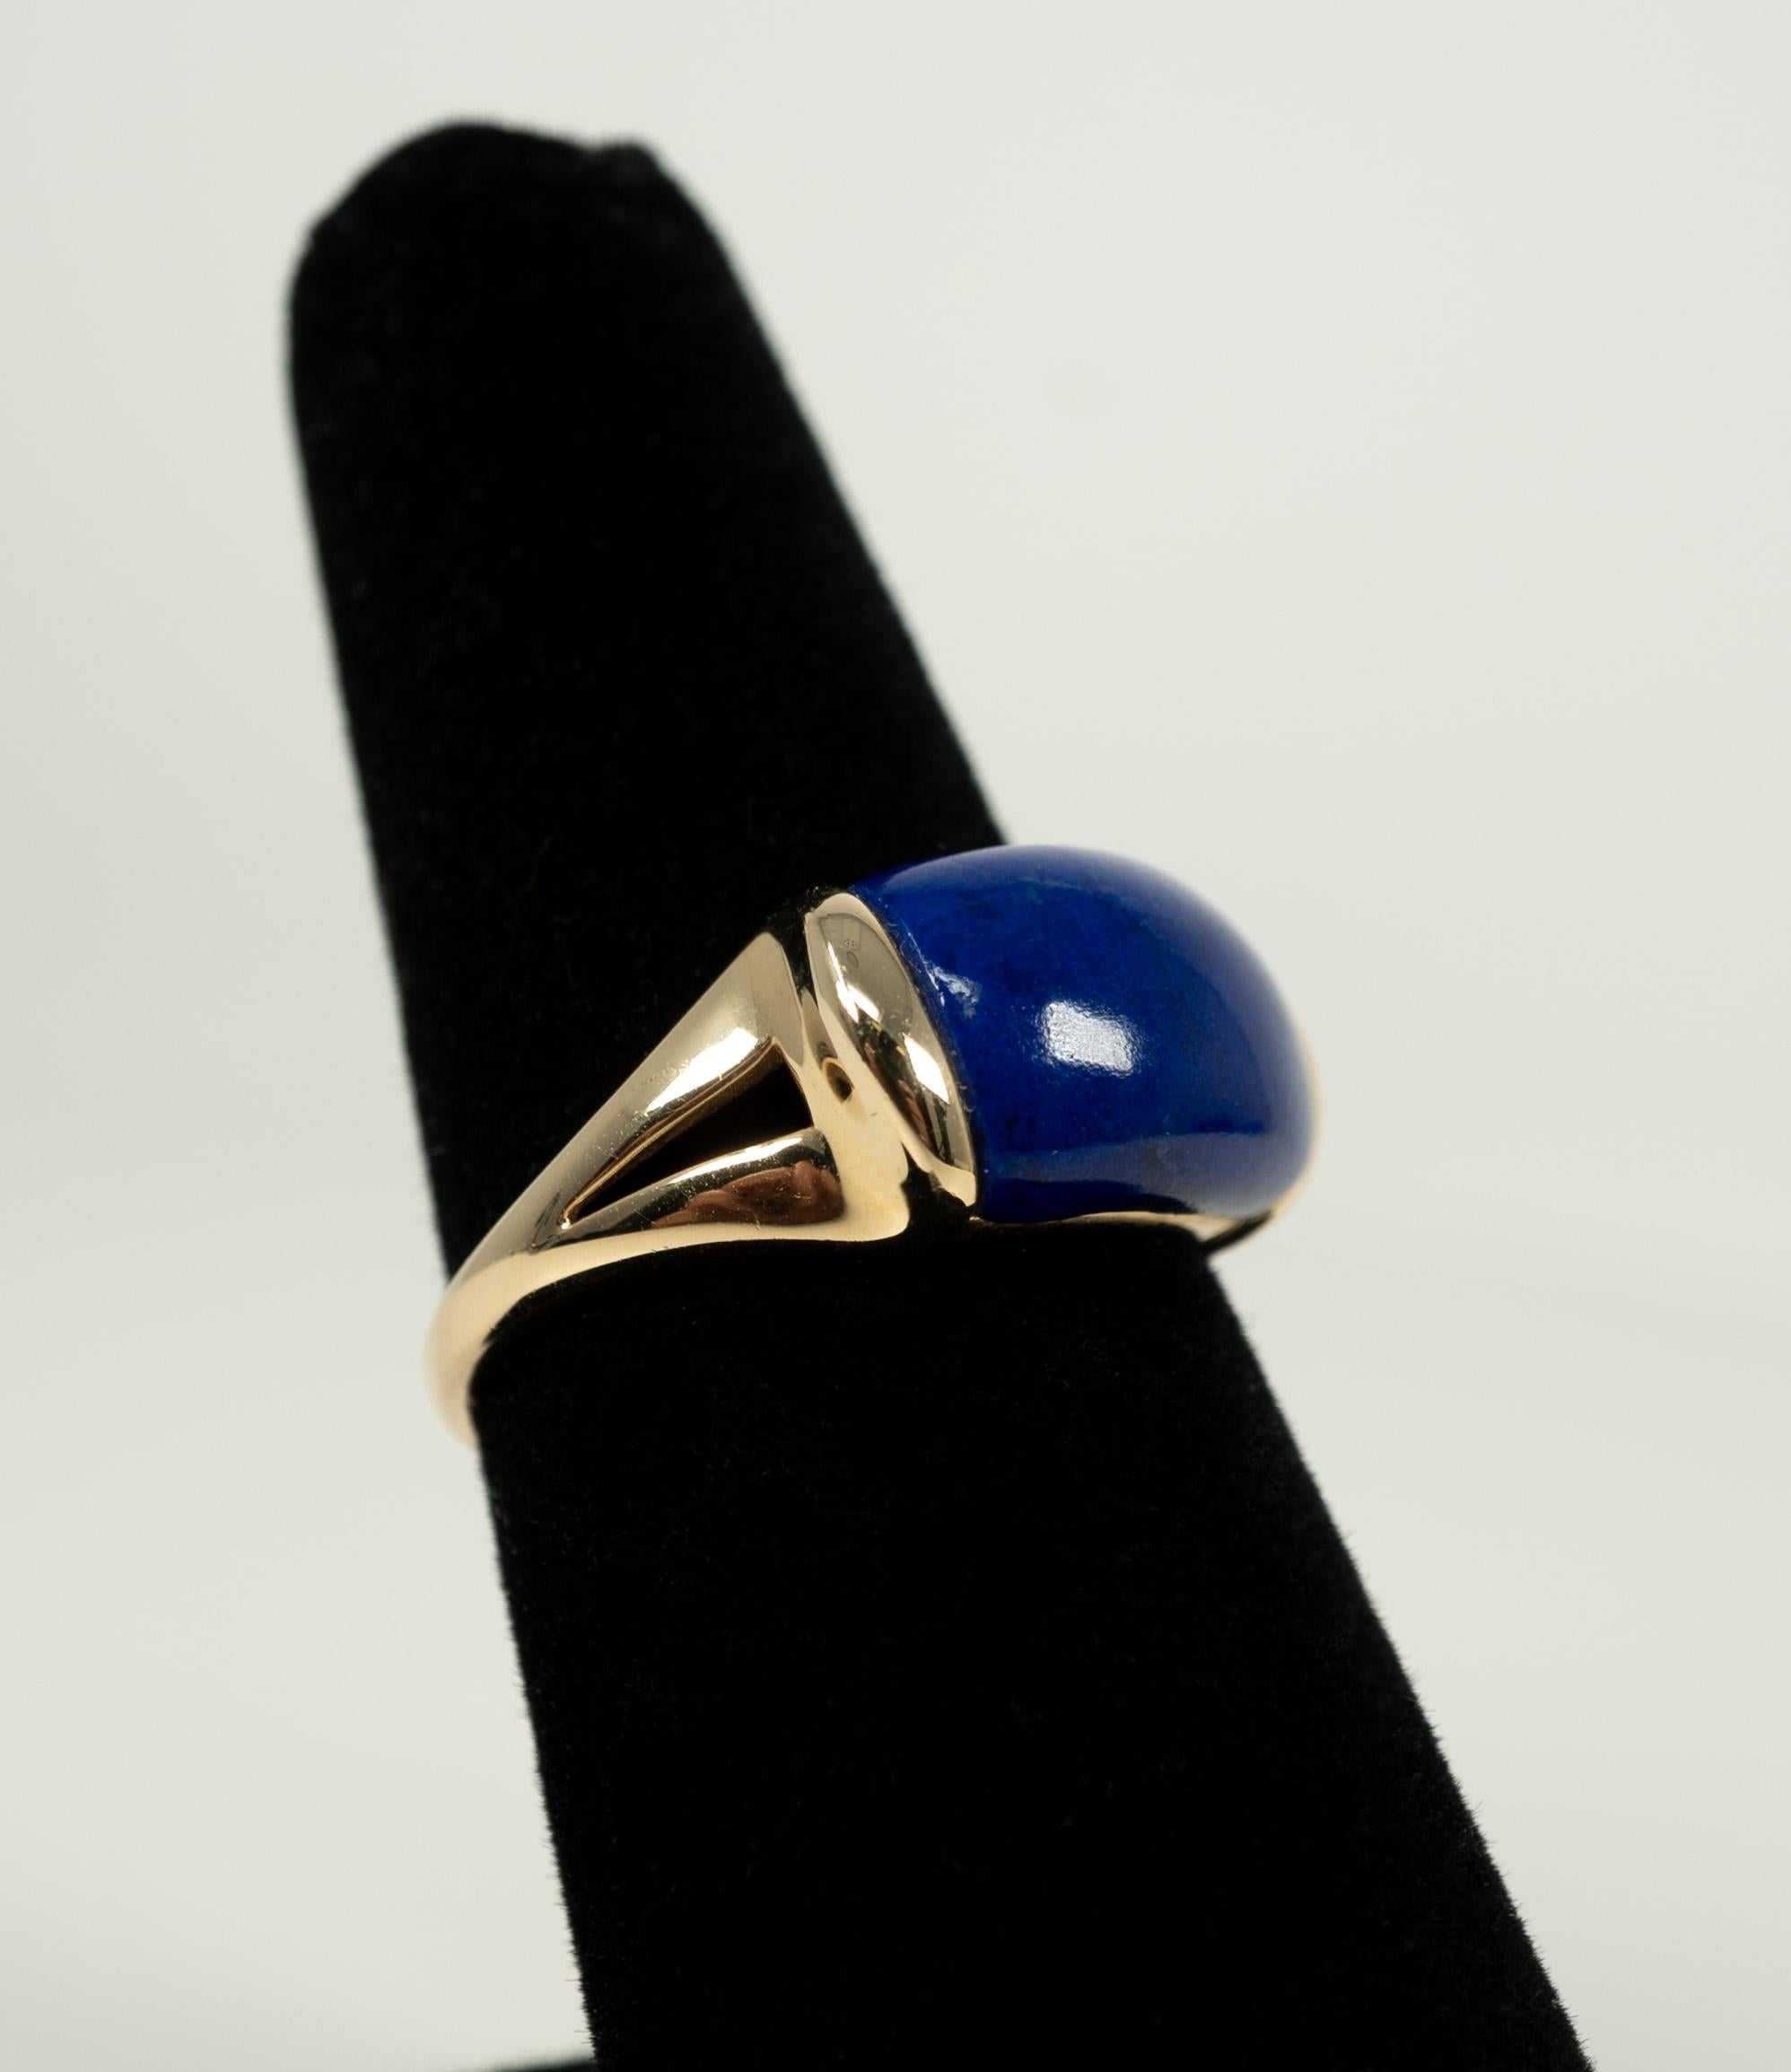 In 14 karat yellow gold, this lovely saddle shaped lapis lazuli just shines!